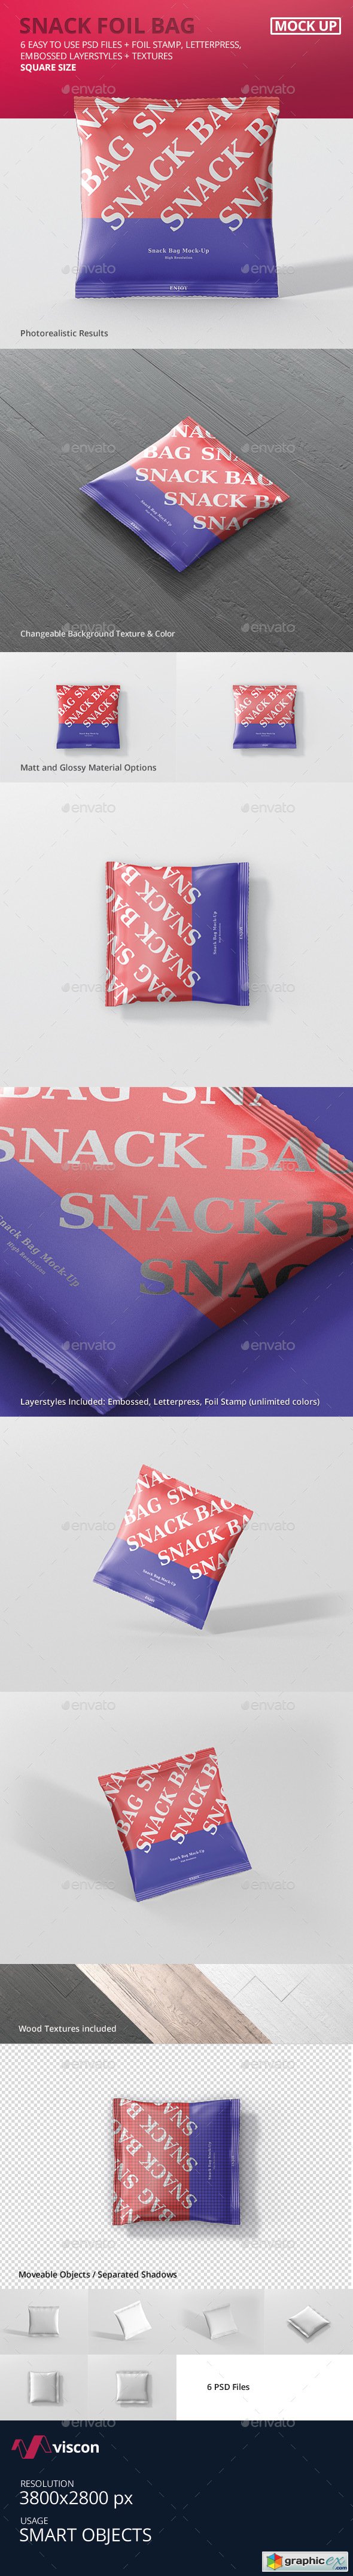 Snack Foil Bag Mockup - Square Size